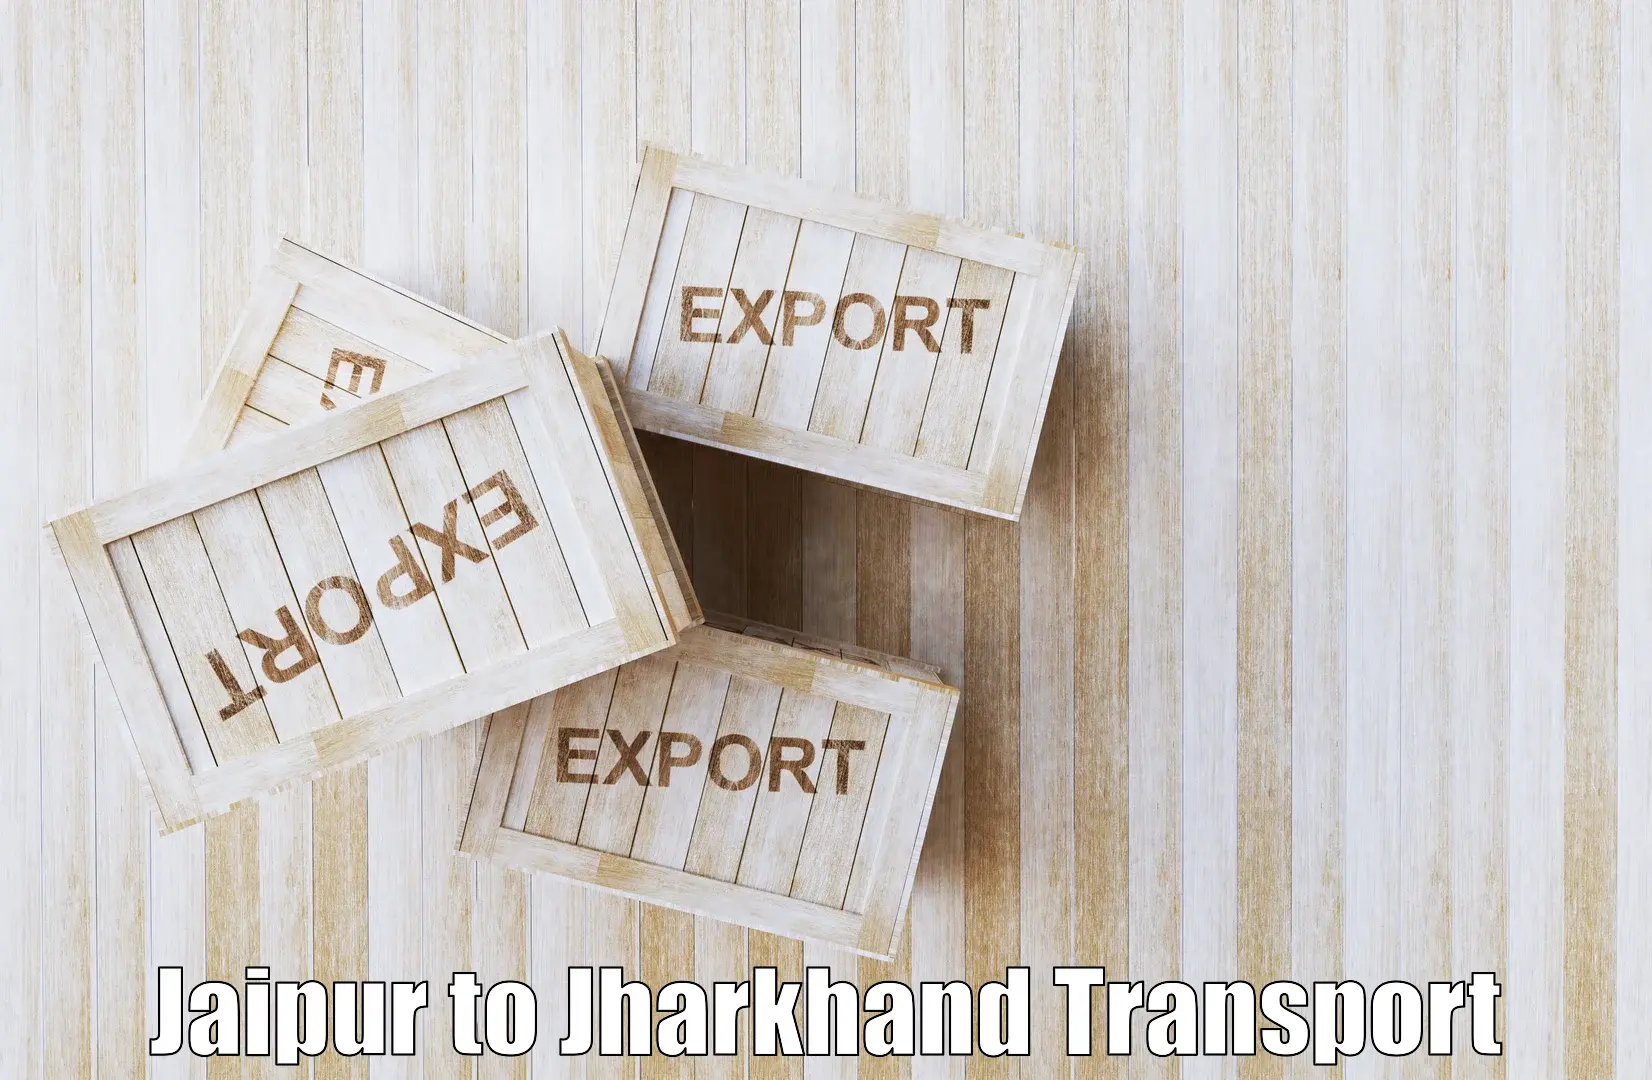 Nearest transport service Jaipur to Domchanch